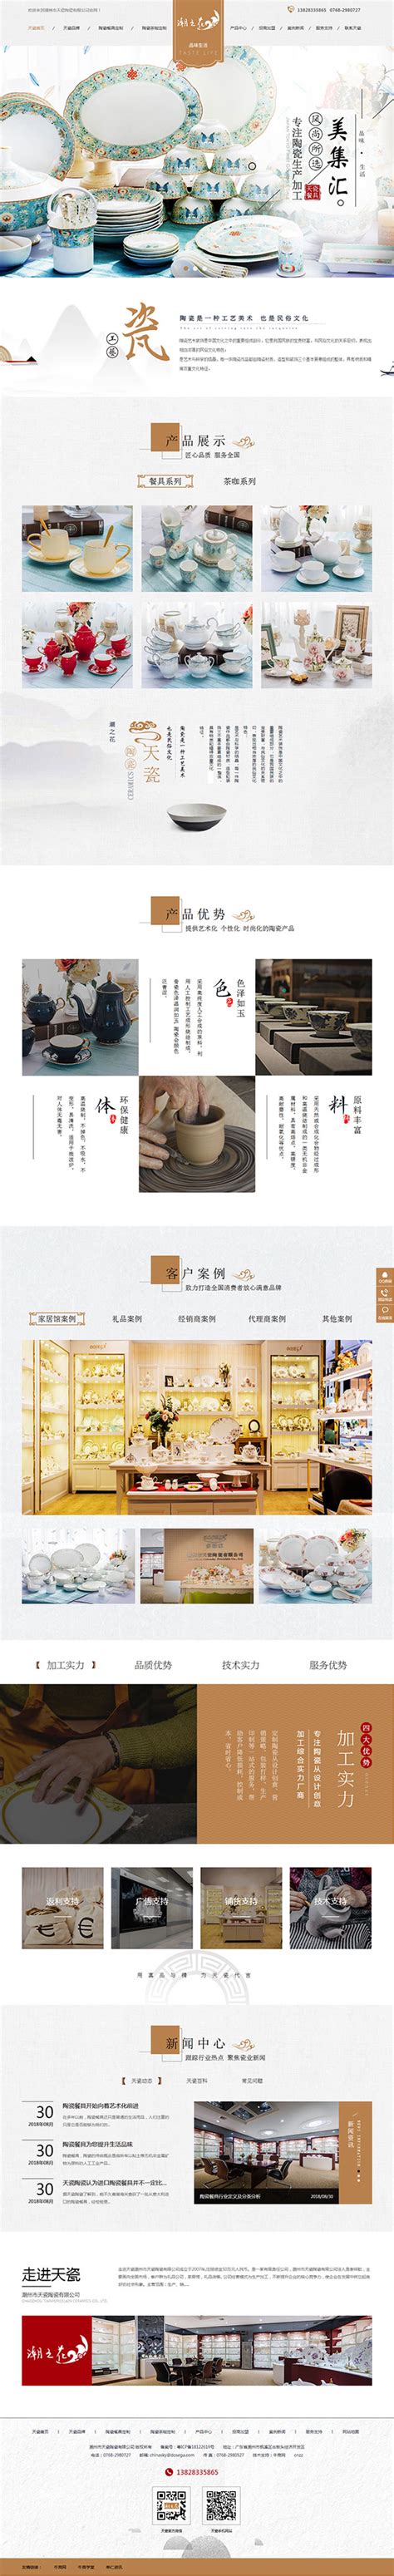 天瓷陶瓷-牛商网营销型网站案例展示